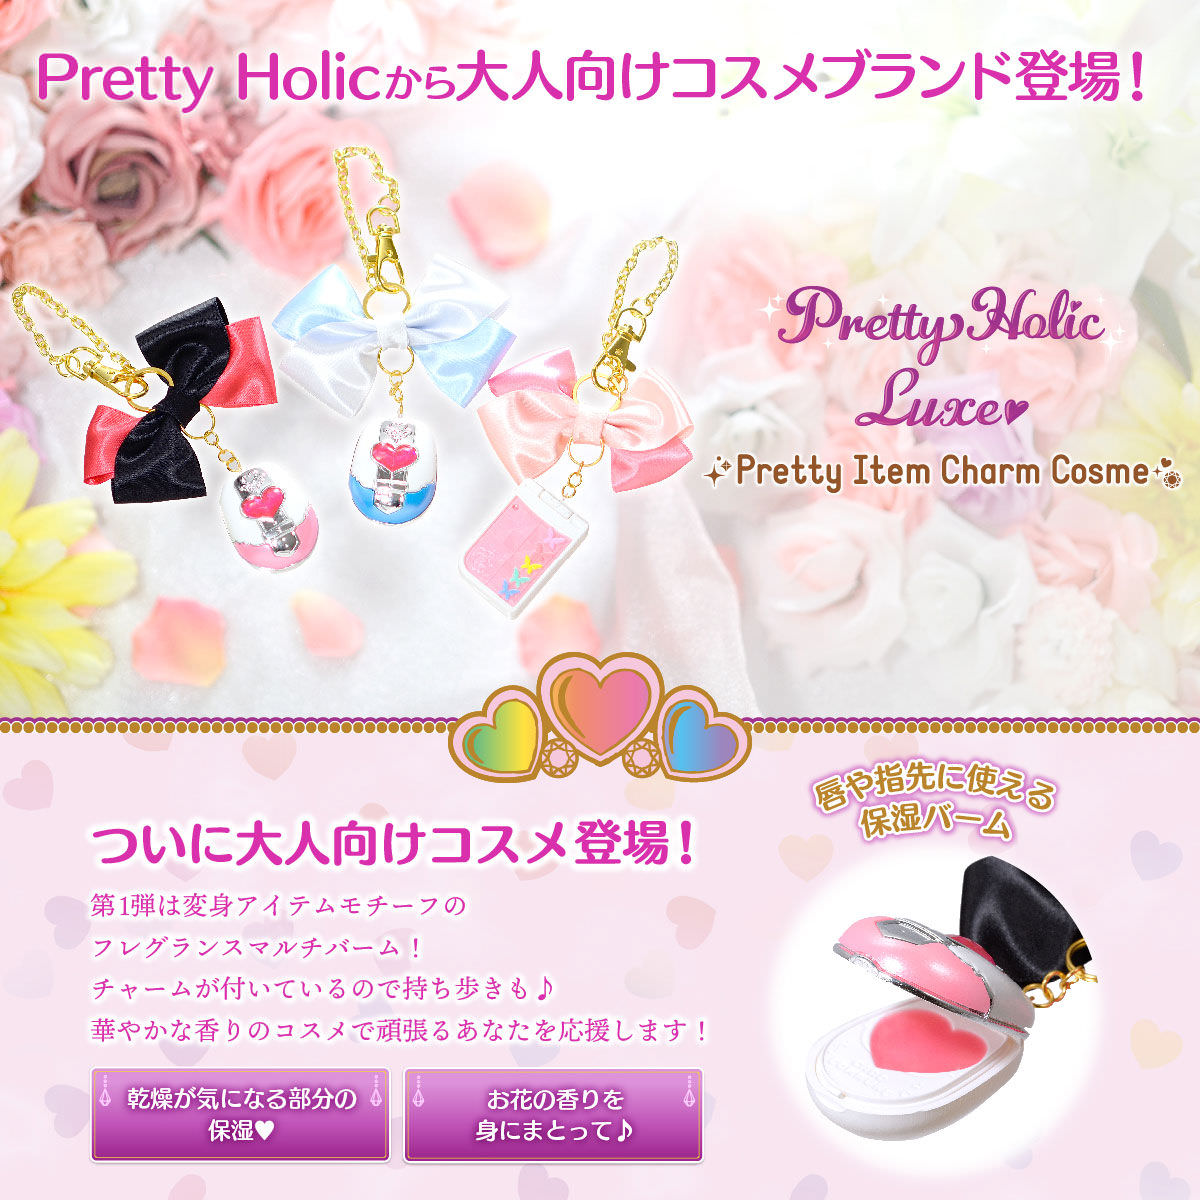 プリキュア「Pretty Holic Luxe」大人向けコスメチャームが10月に新発売!!